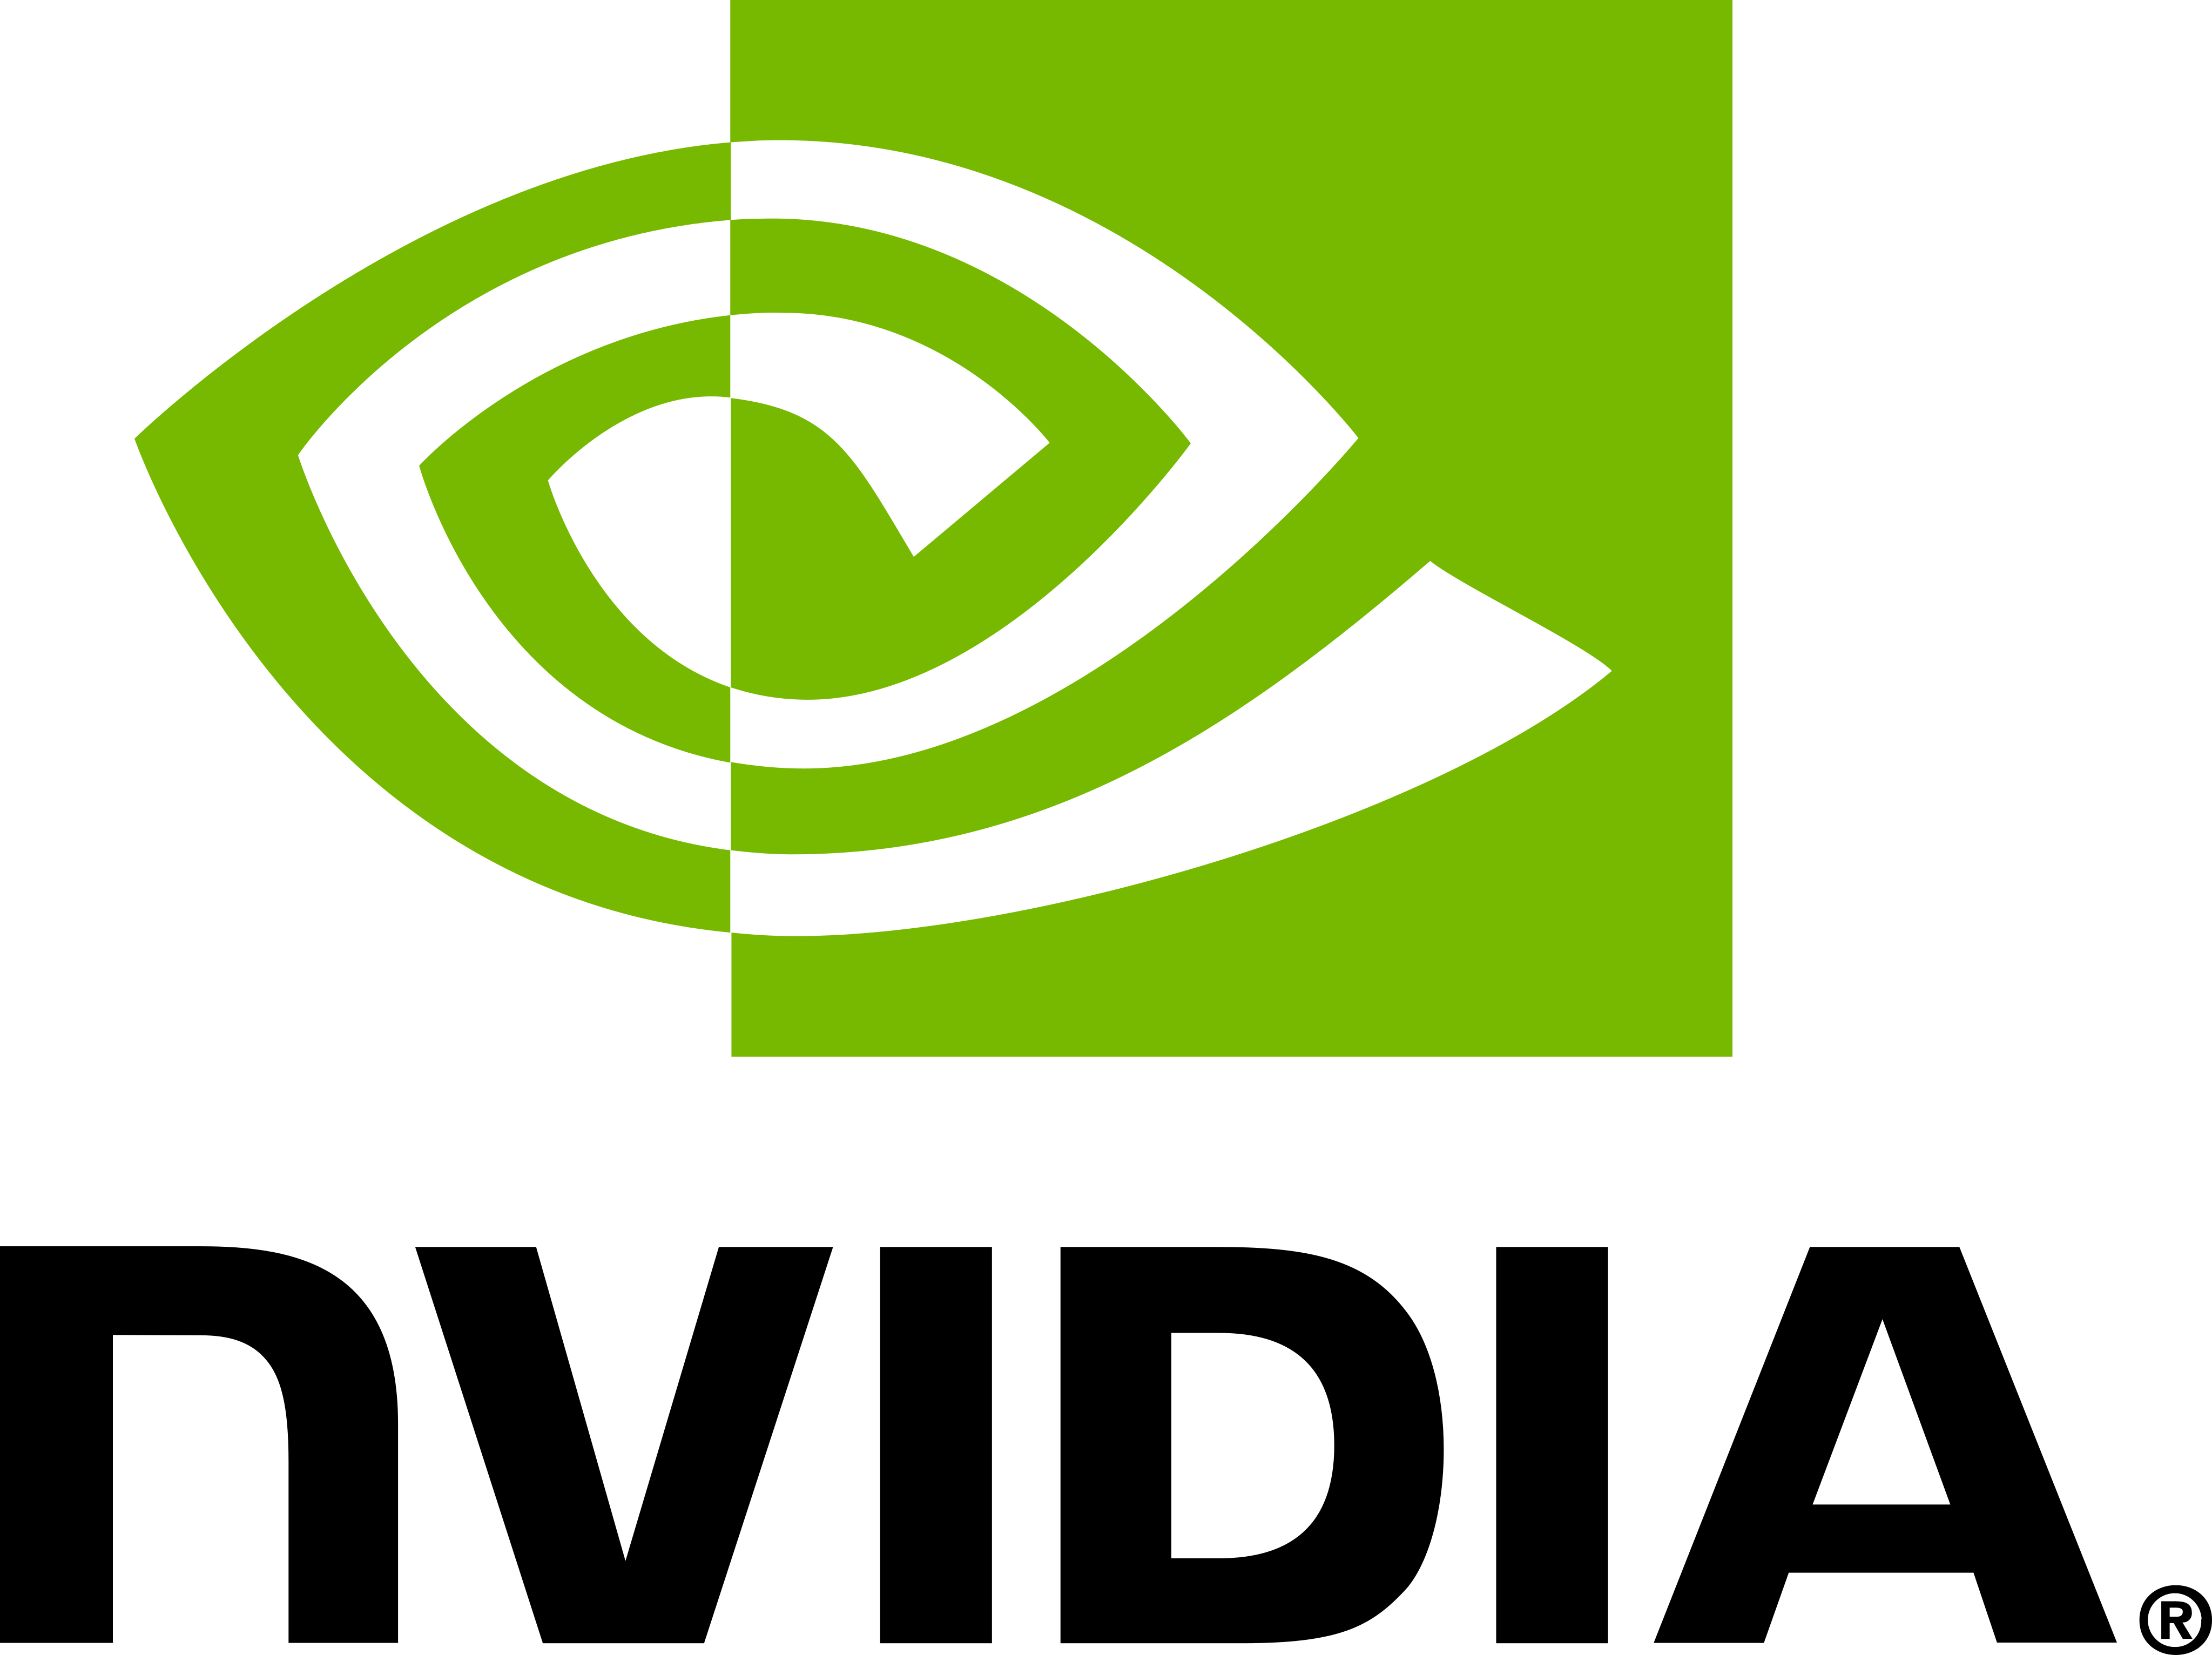 nvidia logo 1 2 - Nvidia Logo